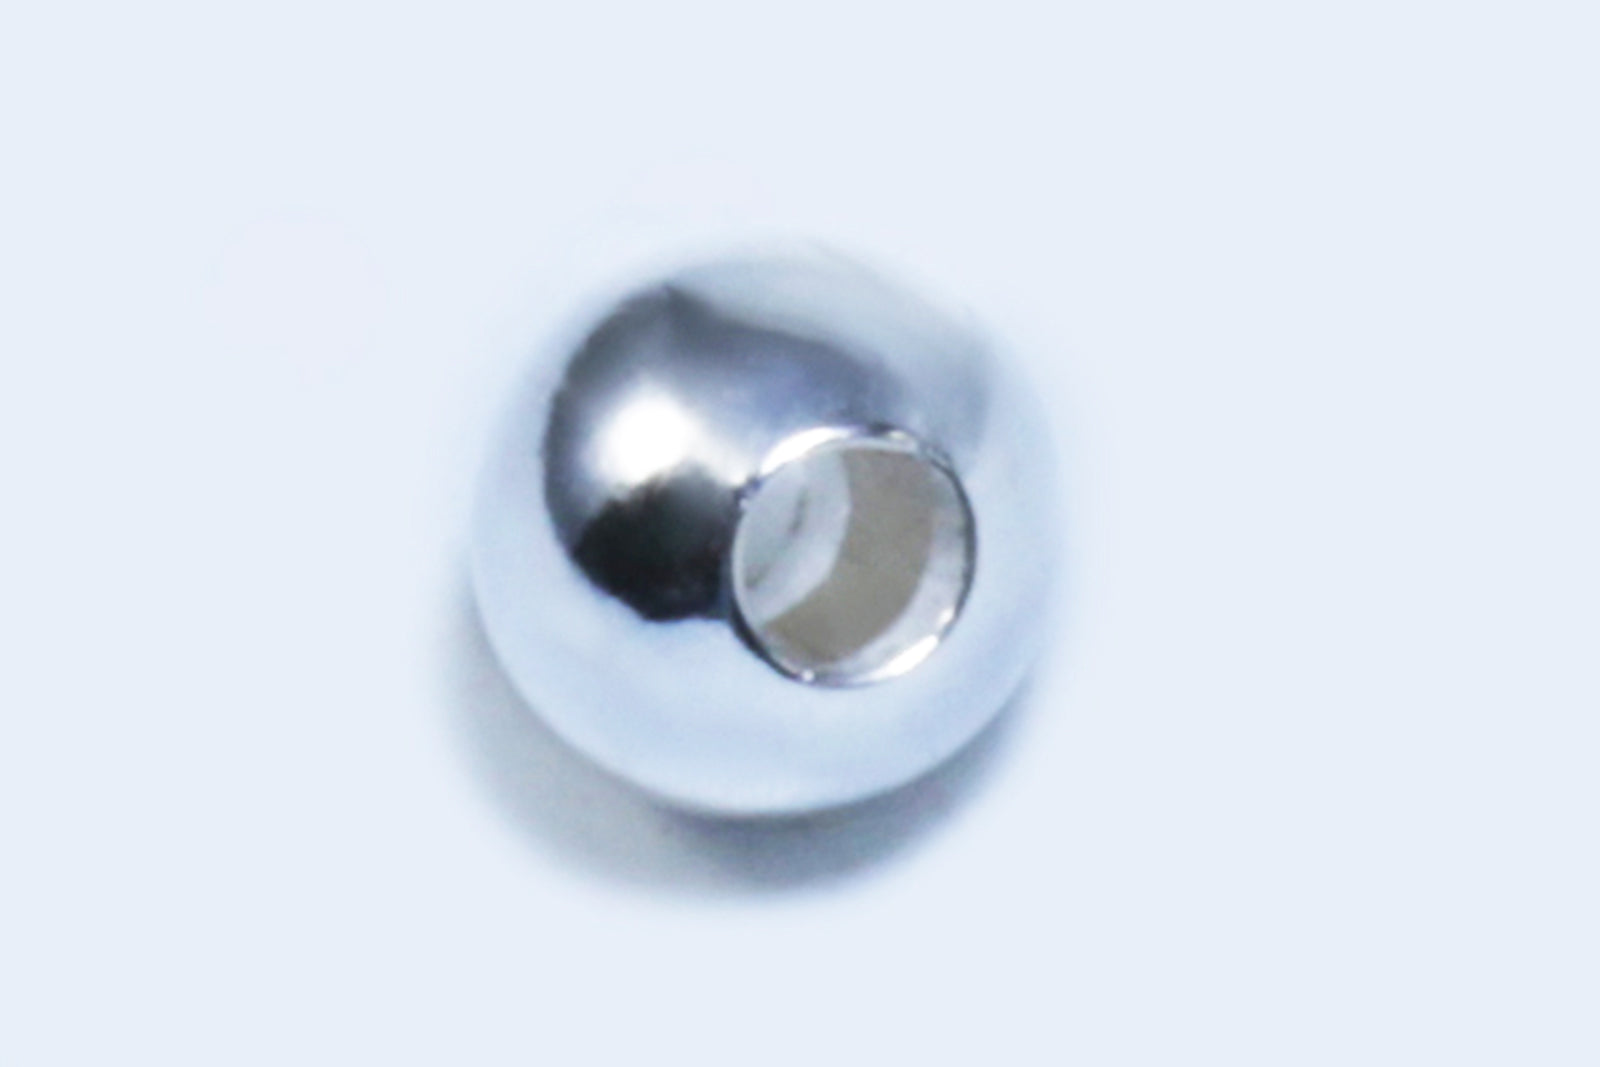 Perlen aus 925 Silber, Ø 5 mm, glatt von inwaria